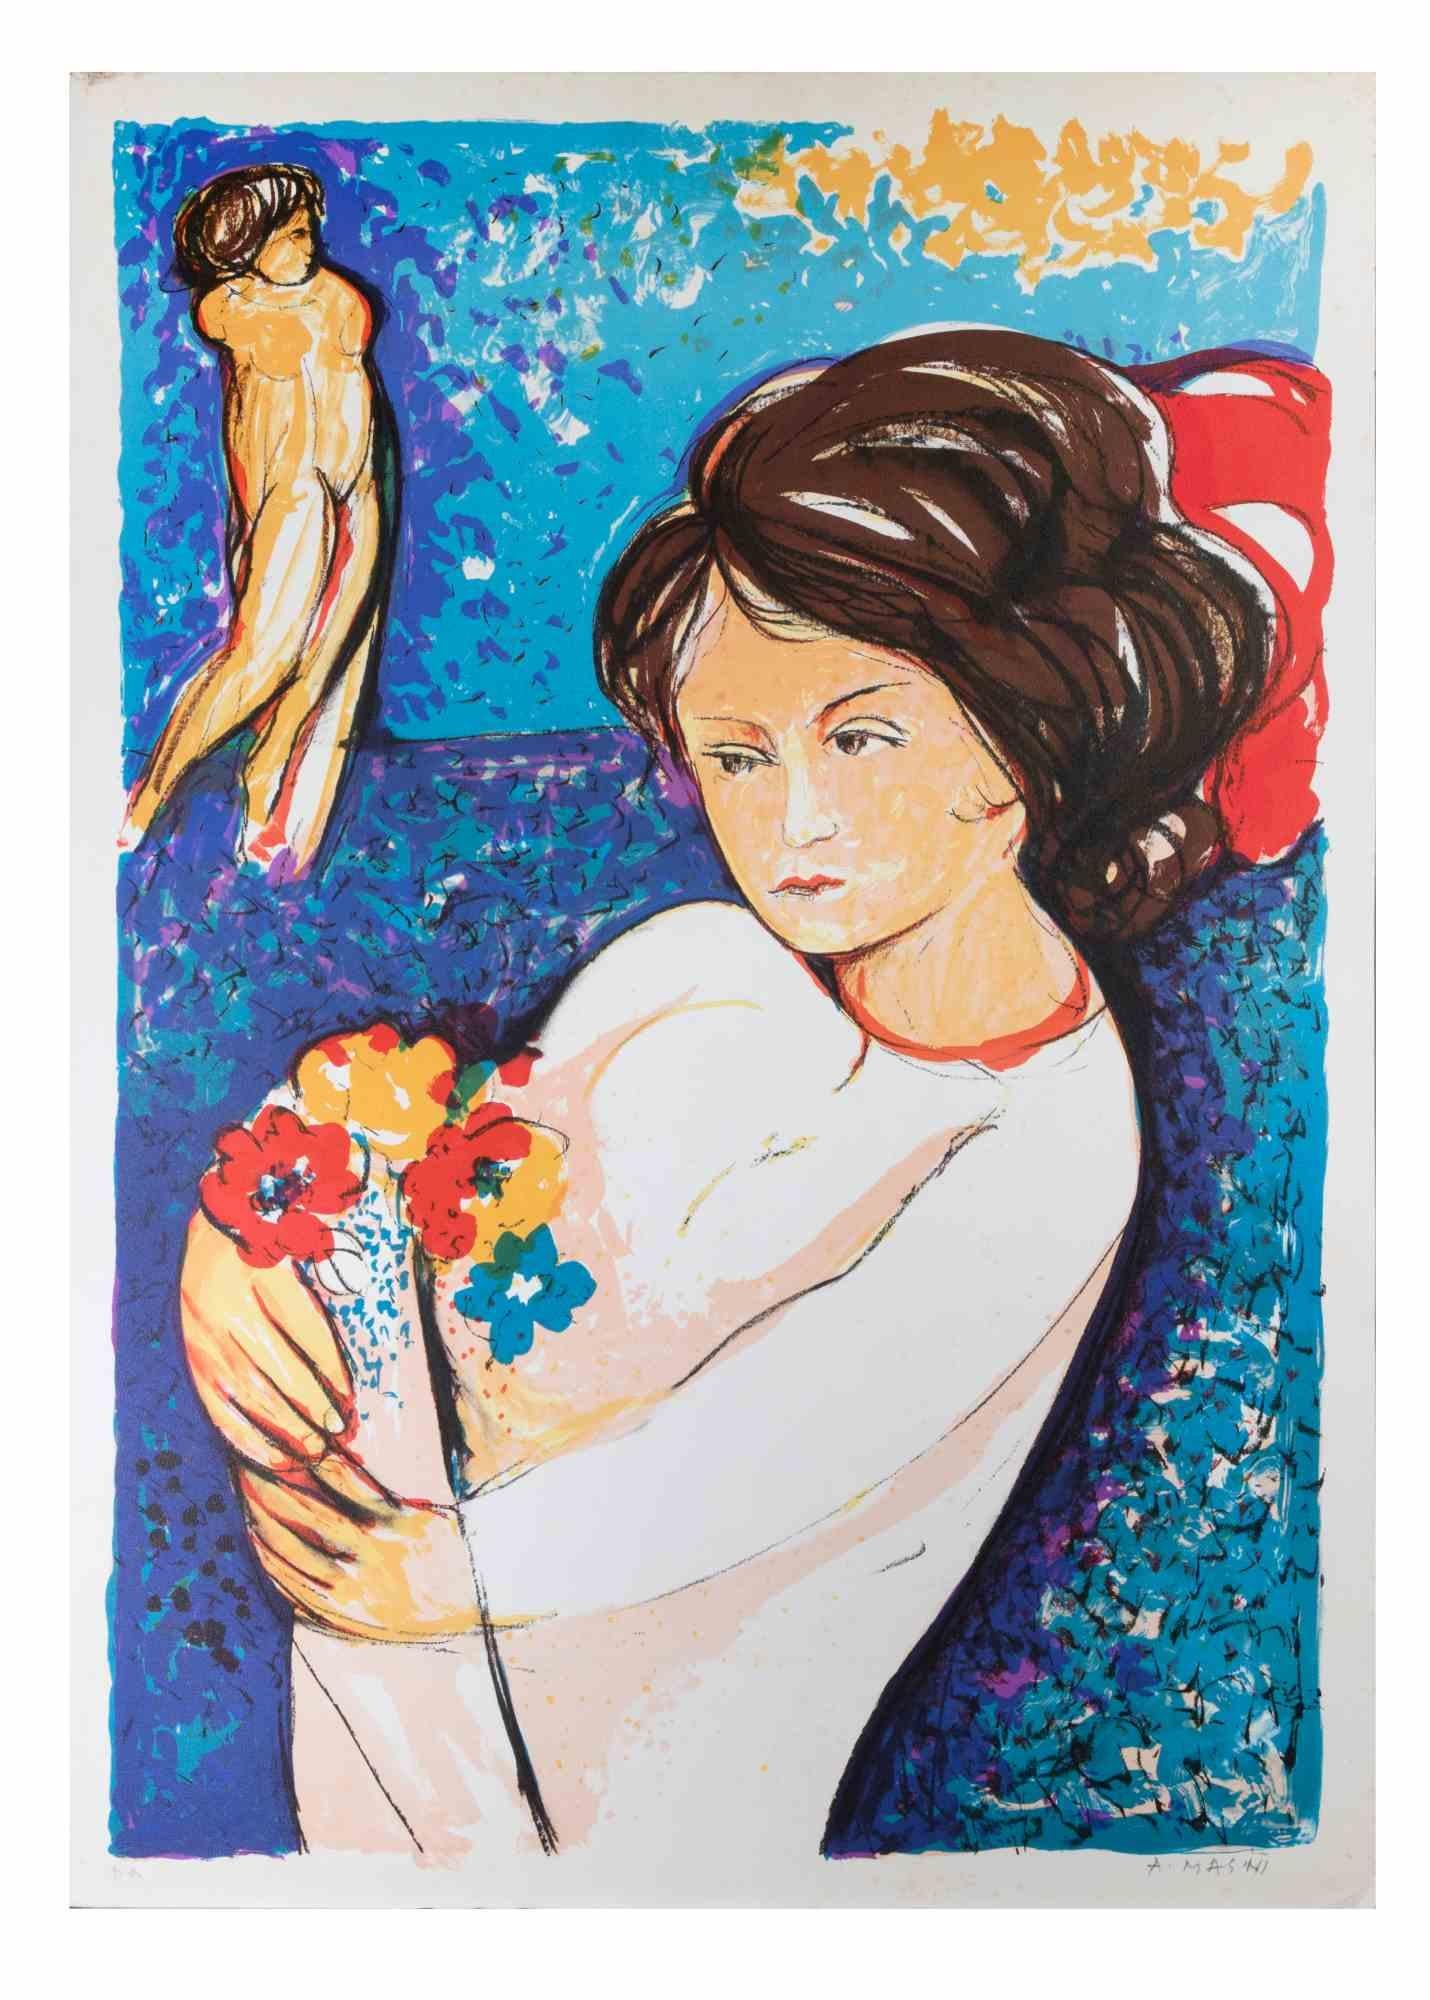 Girl est une lithographie réalisée par Antonio Masini dans les années 1970.

Signé à la main au crayon en bas à droite. Preuve d'artiste.

Bonnes conditions.

Une scène colorée et rêveuse avec une fille et un bouquet de fleurs, sur fond de bleu